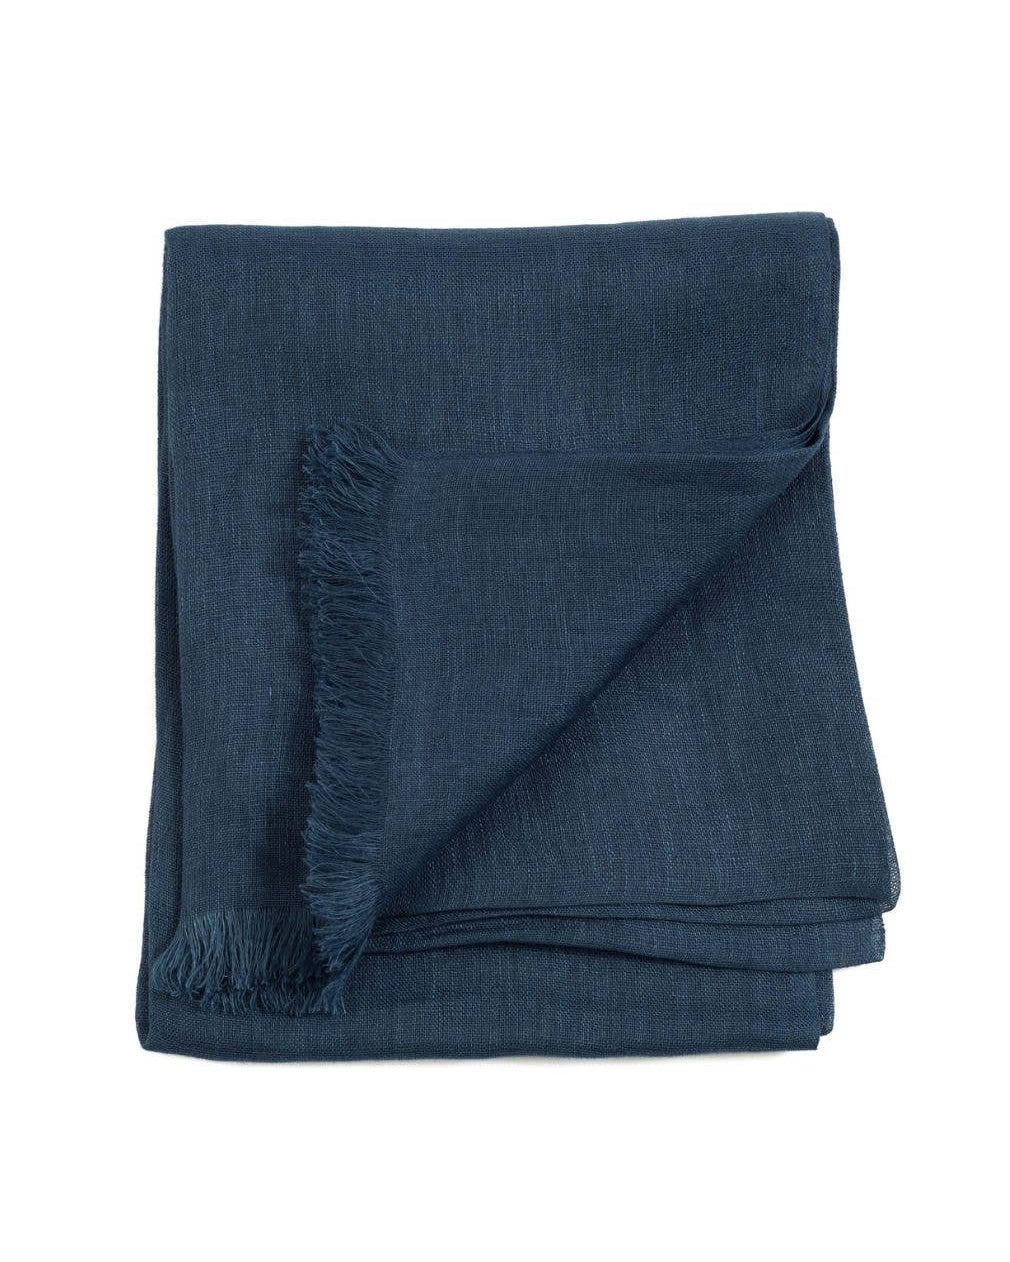 En handvävd linnesjal i mörkblå med fransar. 